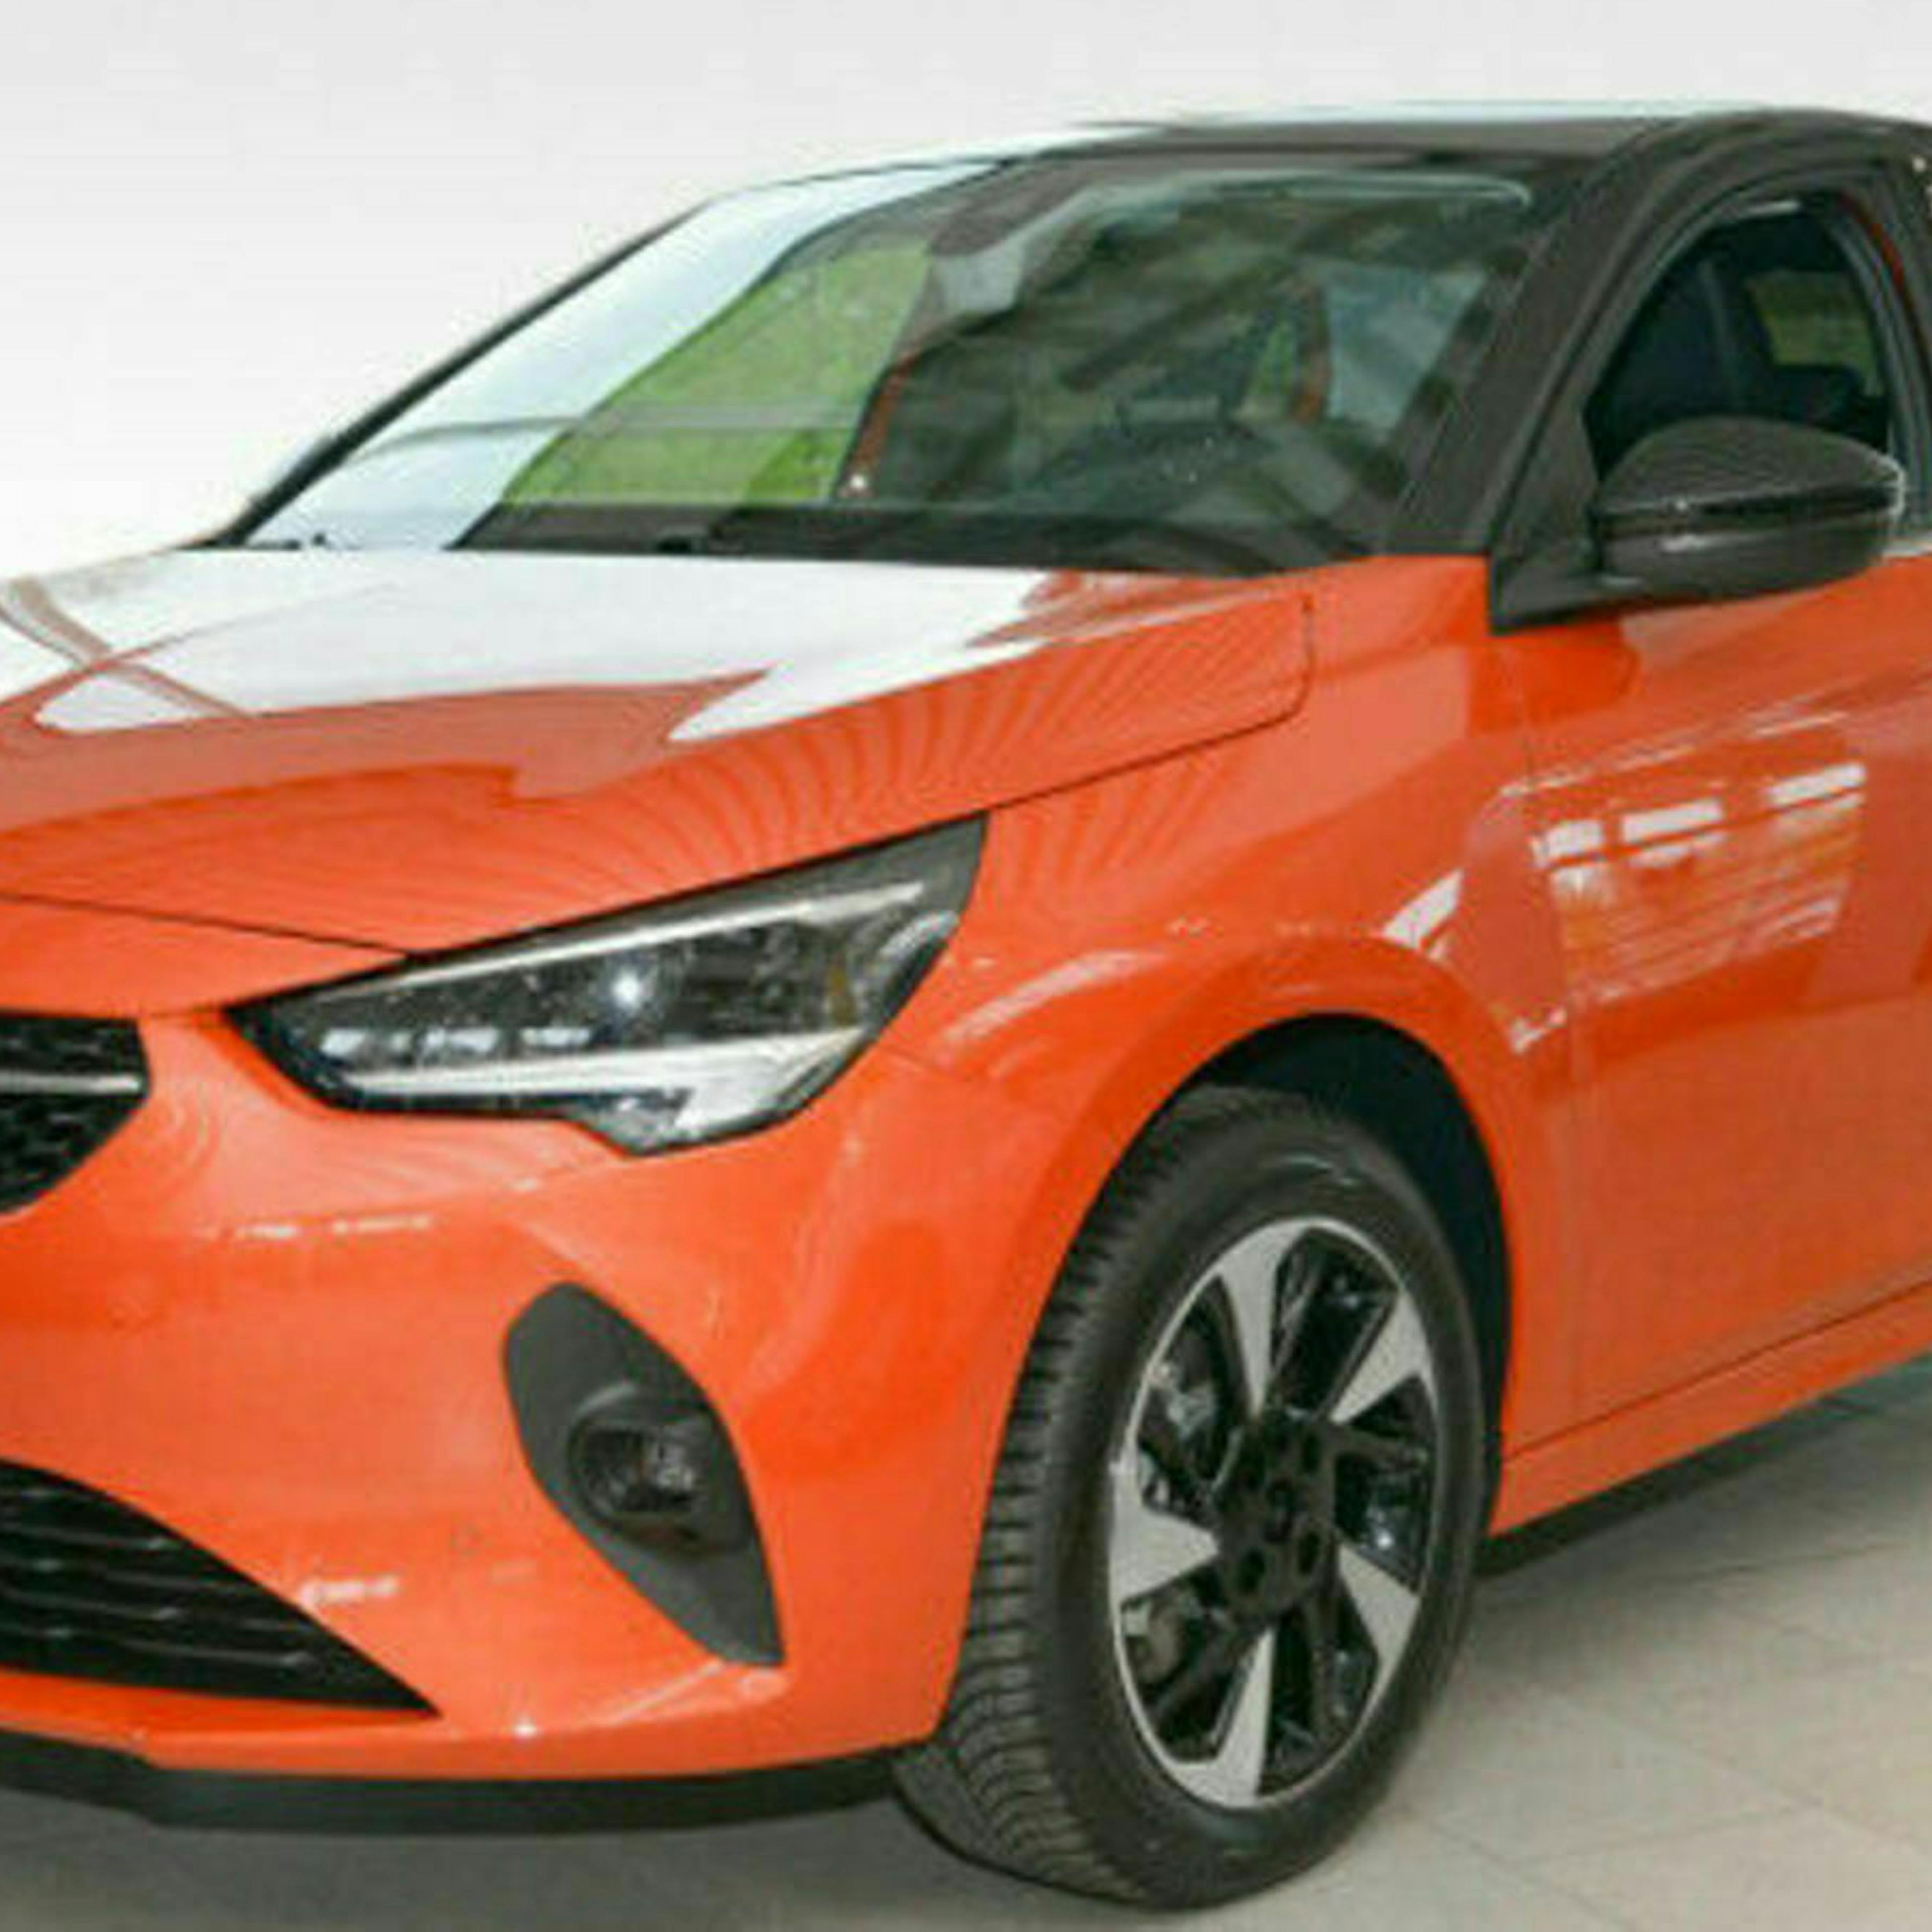 Ein orange-roter Opel Corsa-e steht in einem hellen Raum.